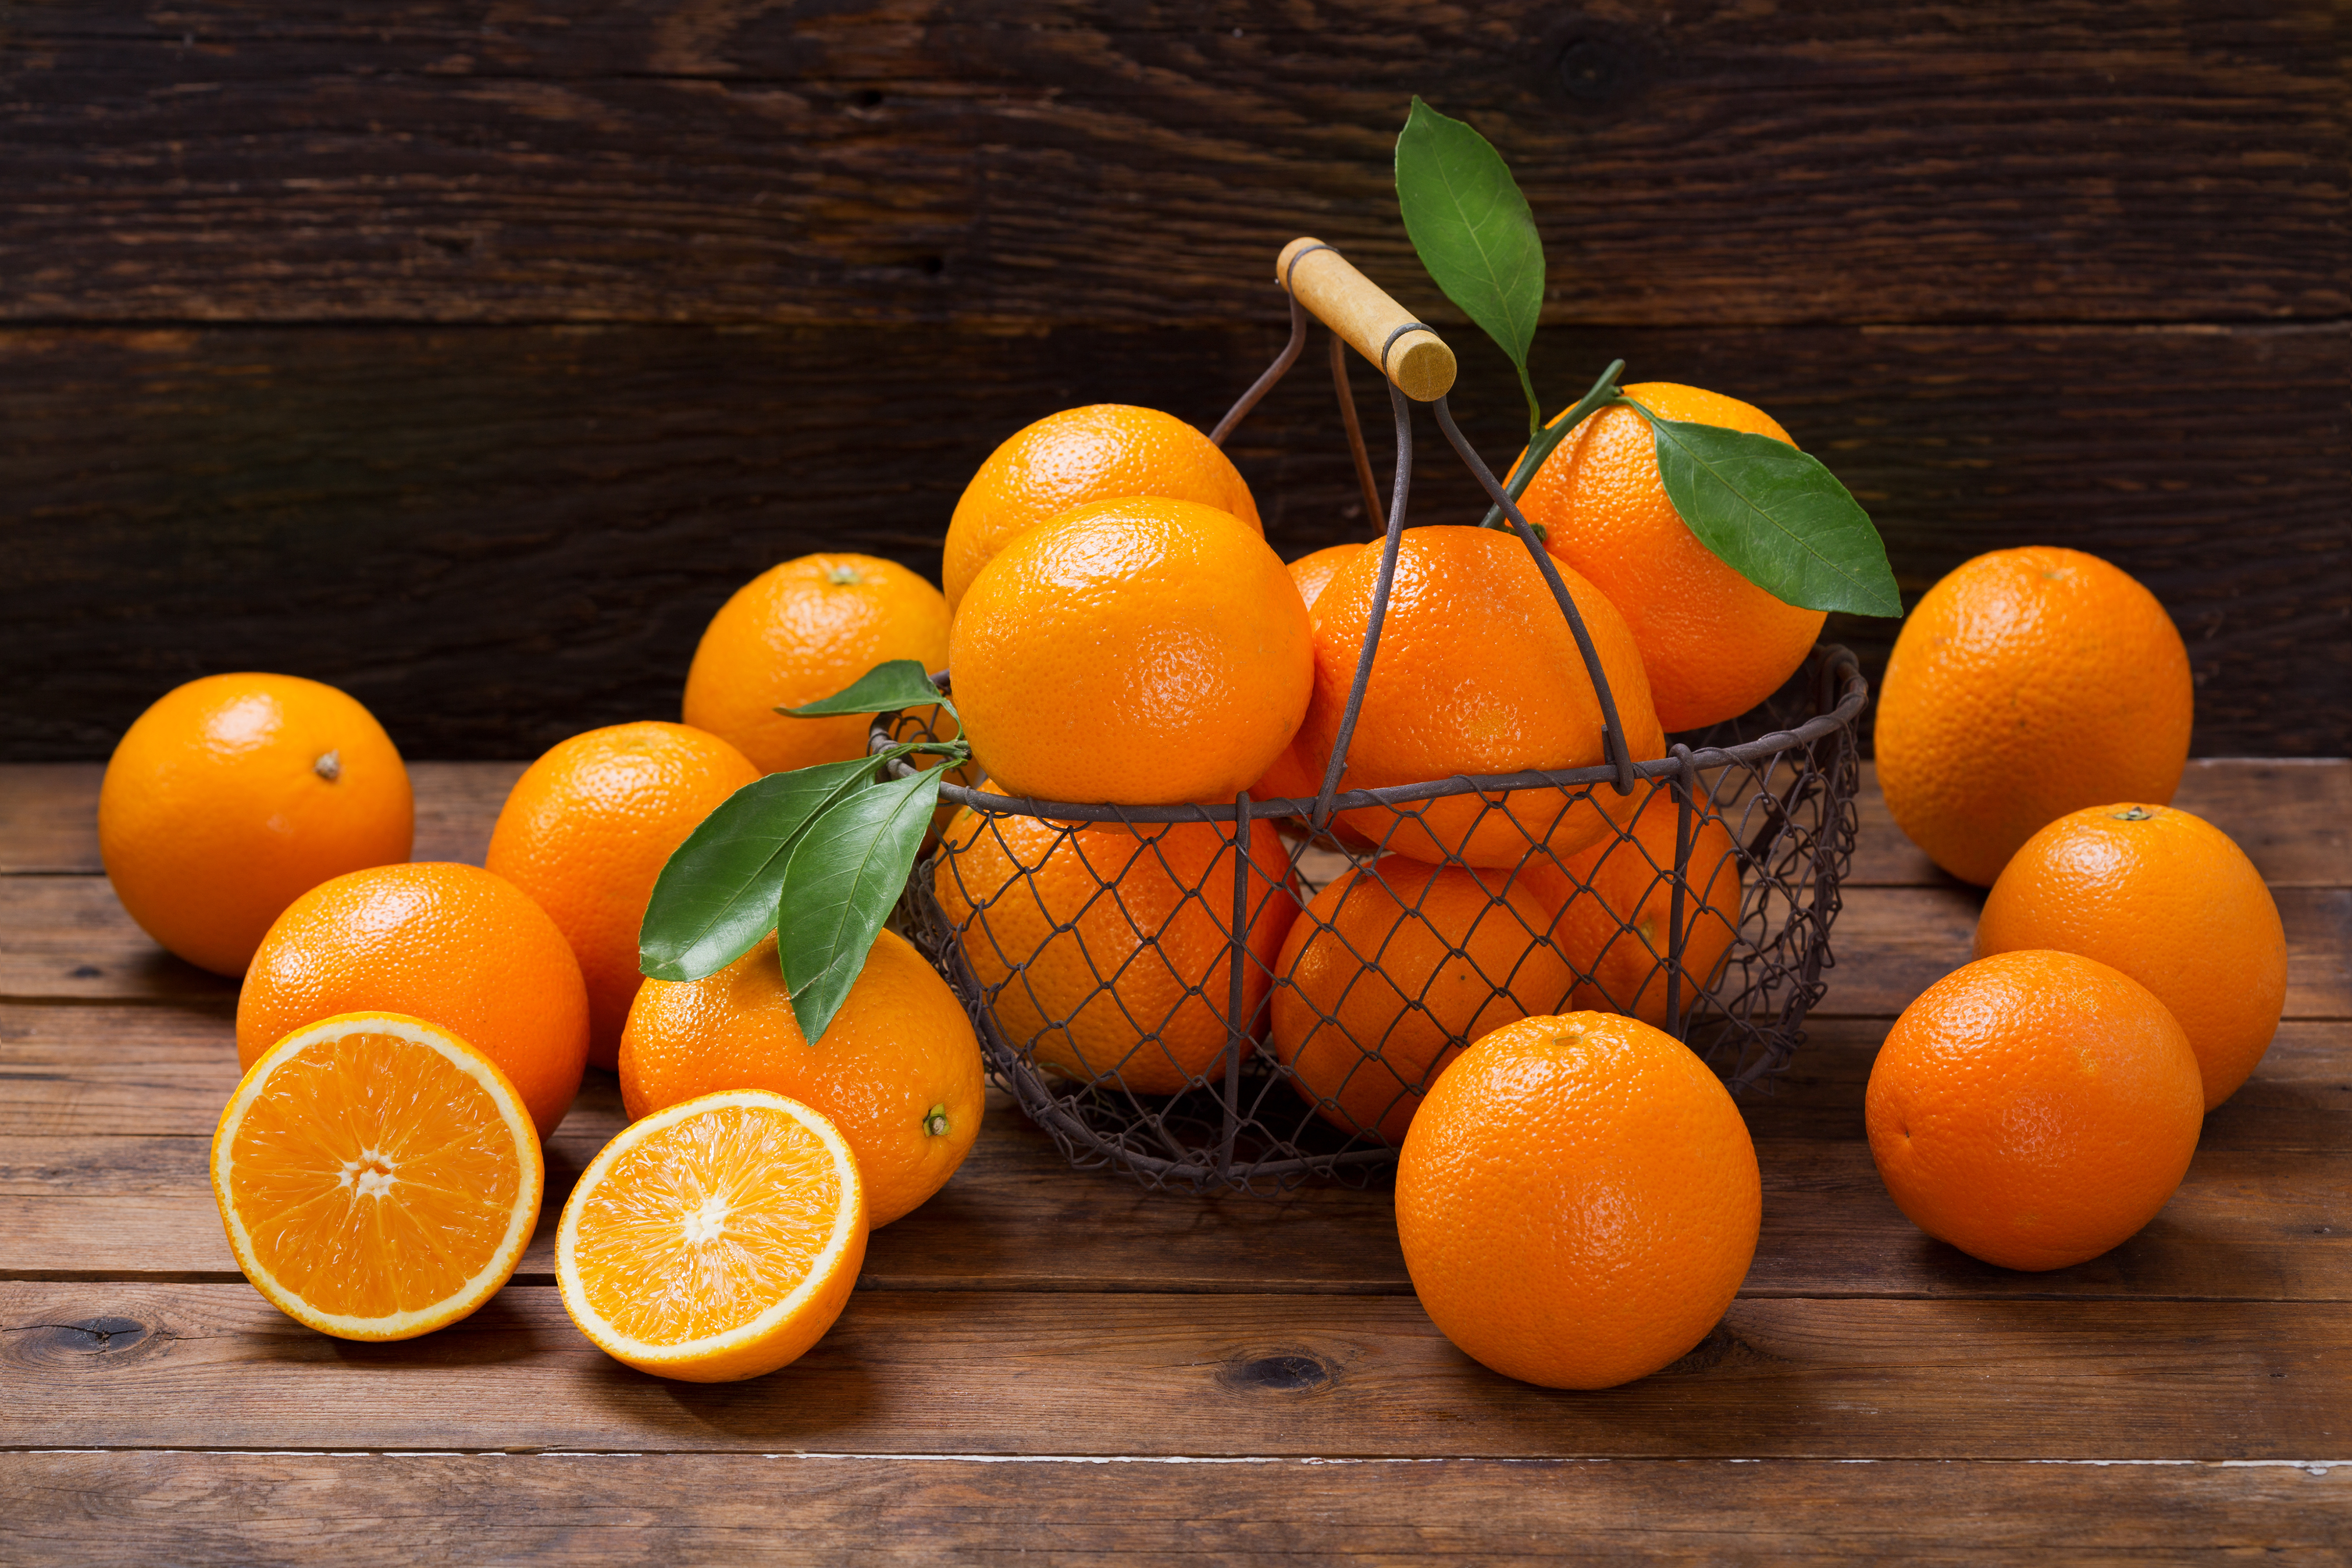 柳橙有双重护眼营养 果皮也养生 还能做清洁剂 叶黄素 维生素c 柳橙皮 大纪元